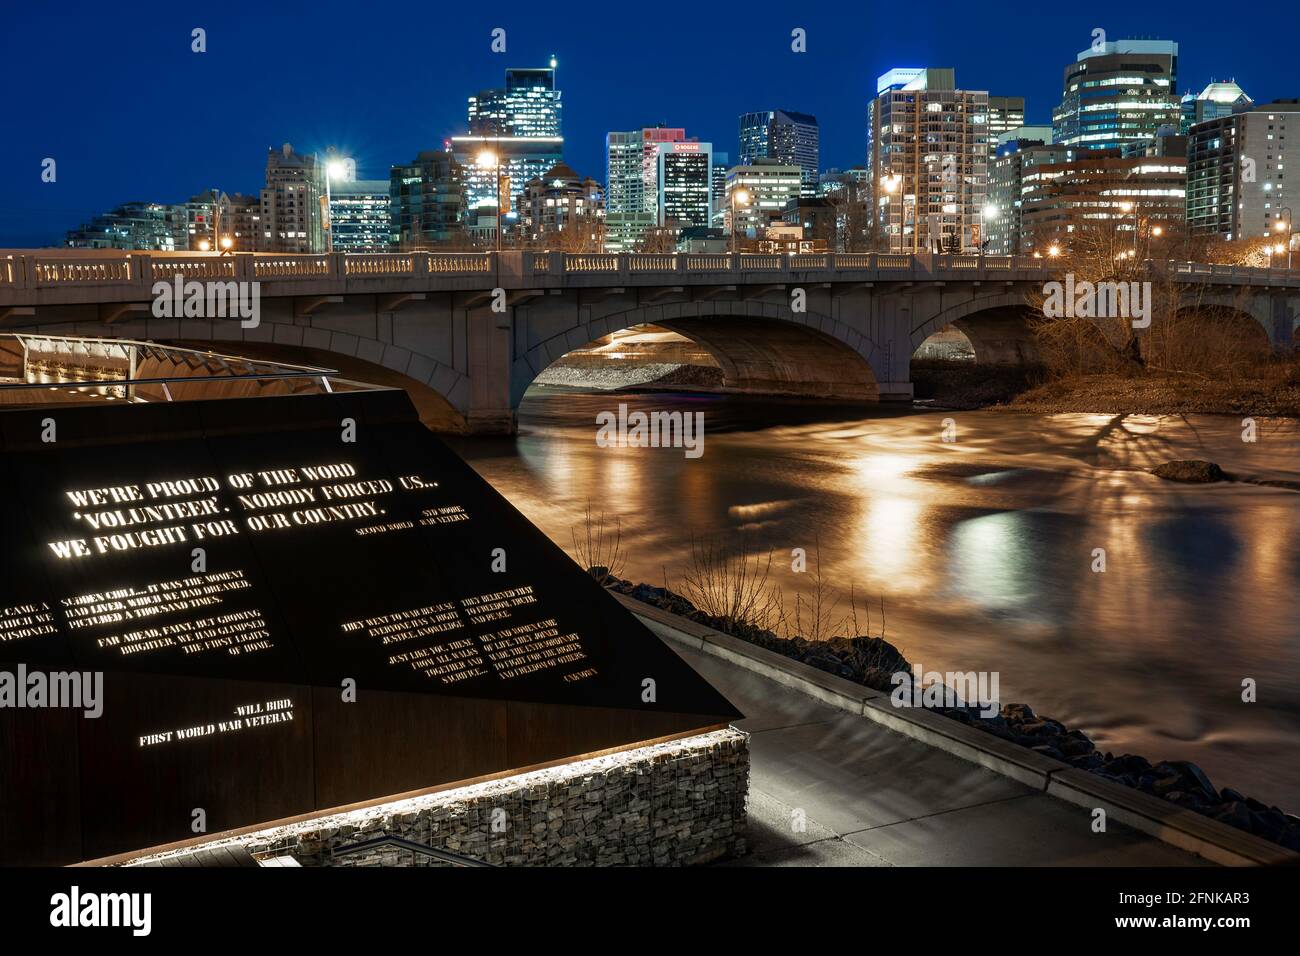 Calgary Alberta Canada, mai 01 2021 : zone de rassemblement public au bord de l'eau le long de la rivière Bow et de la promenade Memorial, au centre-ville de Calgary, la nuit. Banque D'Images